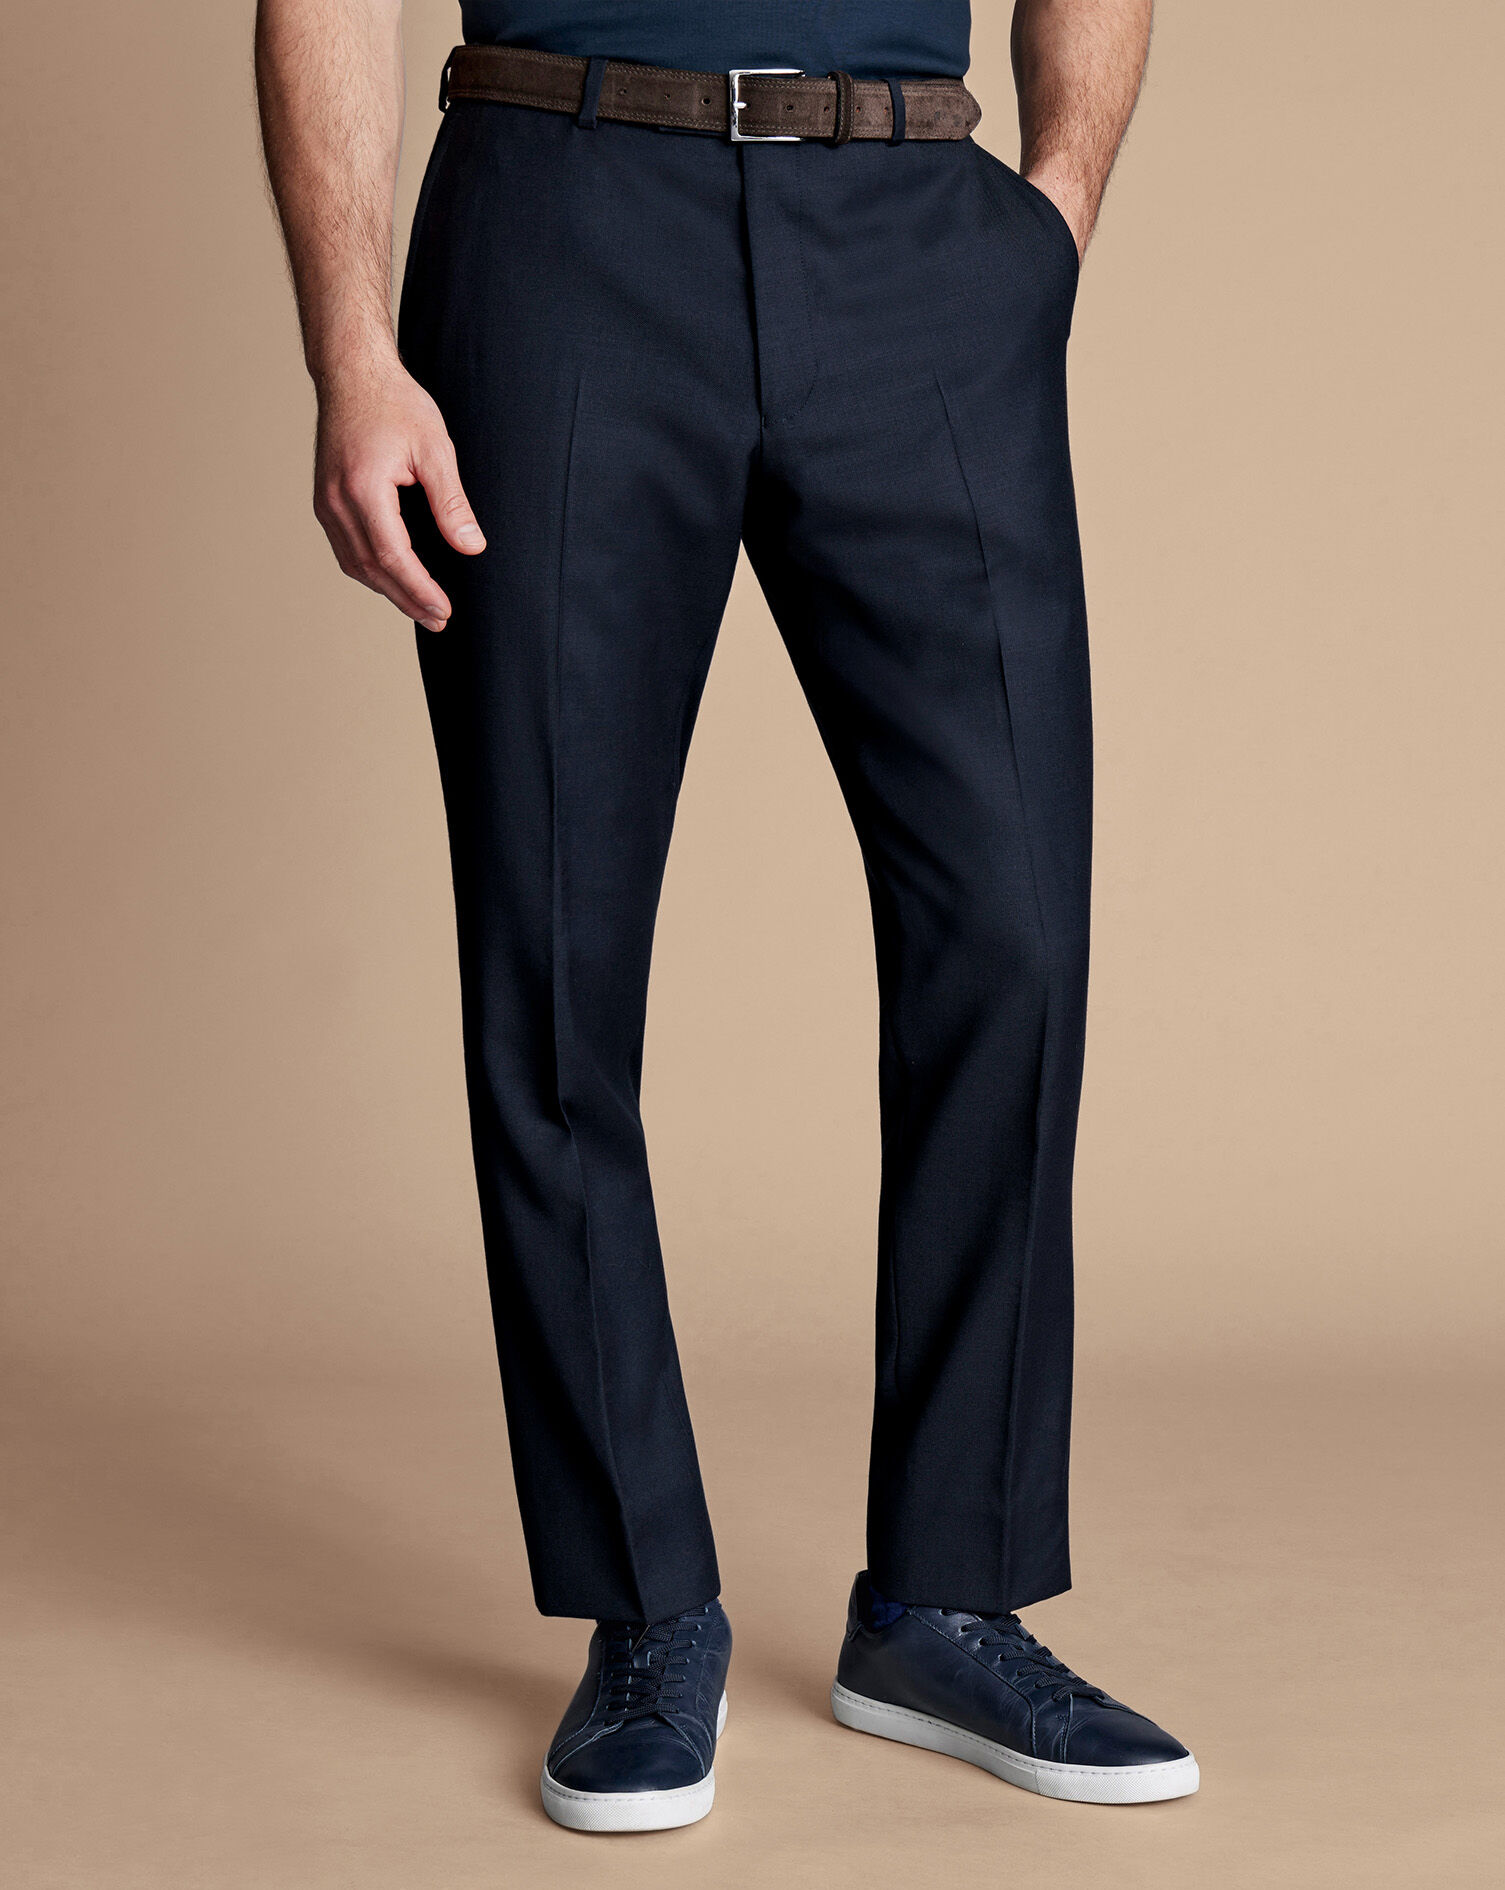 Men's Pants Stretch Suit | Men's Blue Pants Wedding | Casual Men's Suit  Pants - Men's - Aliexpress